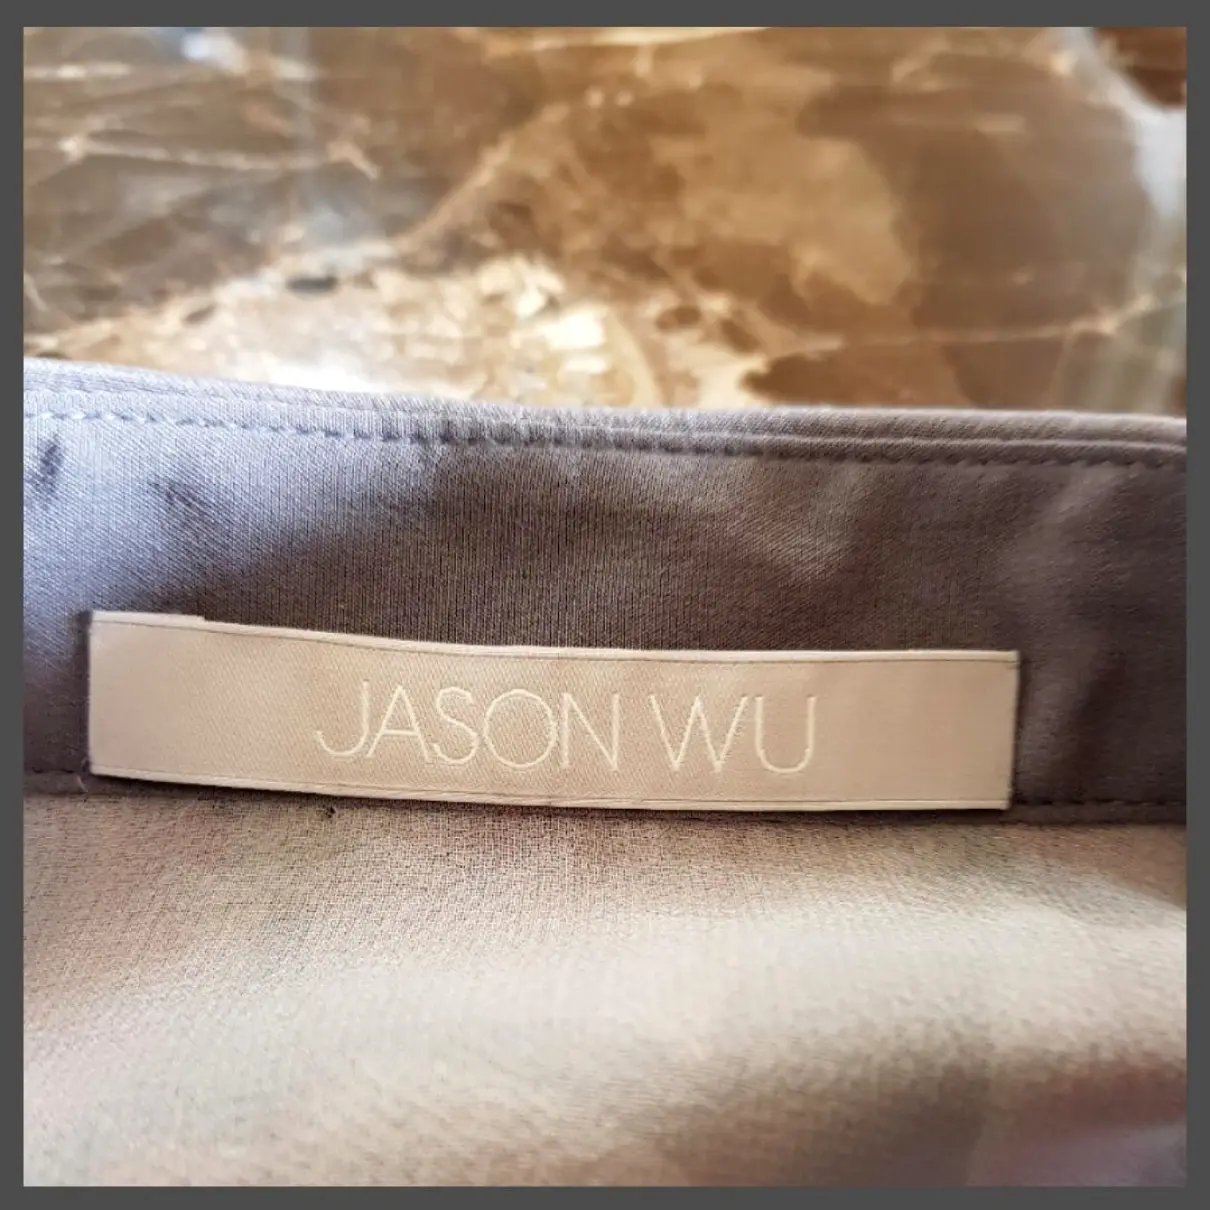 Buy Jason Wu Silk blouse online